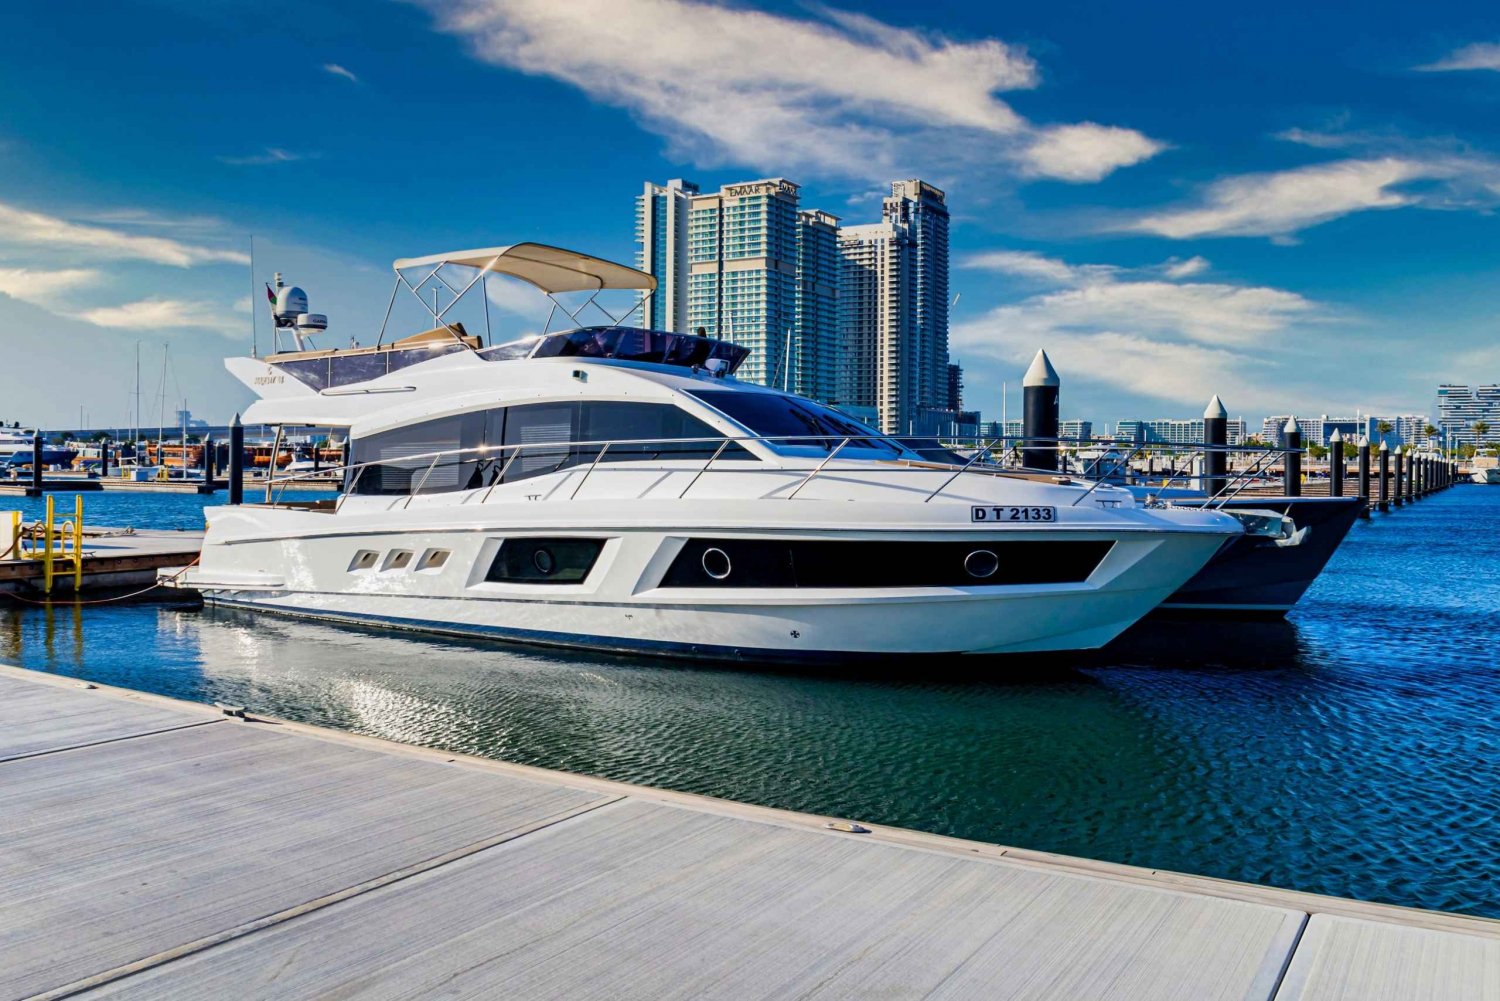 Entdecke die versteckte Insel in Dubai mit der Majesty 48ft Yacht